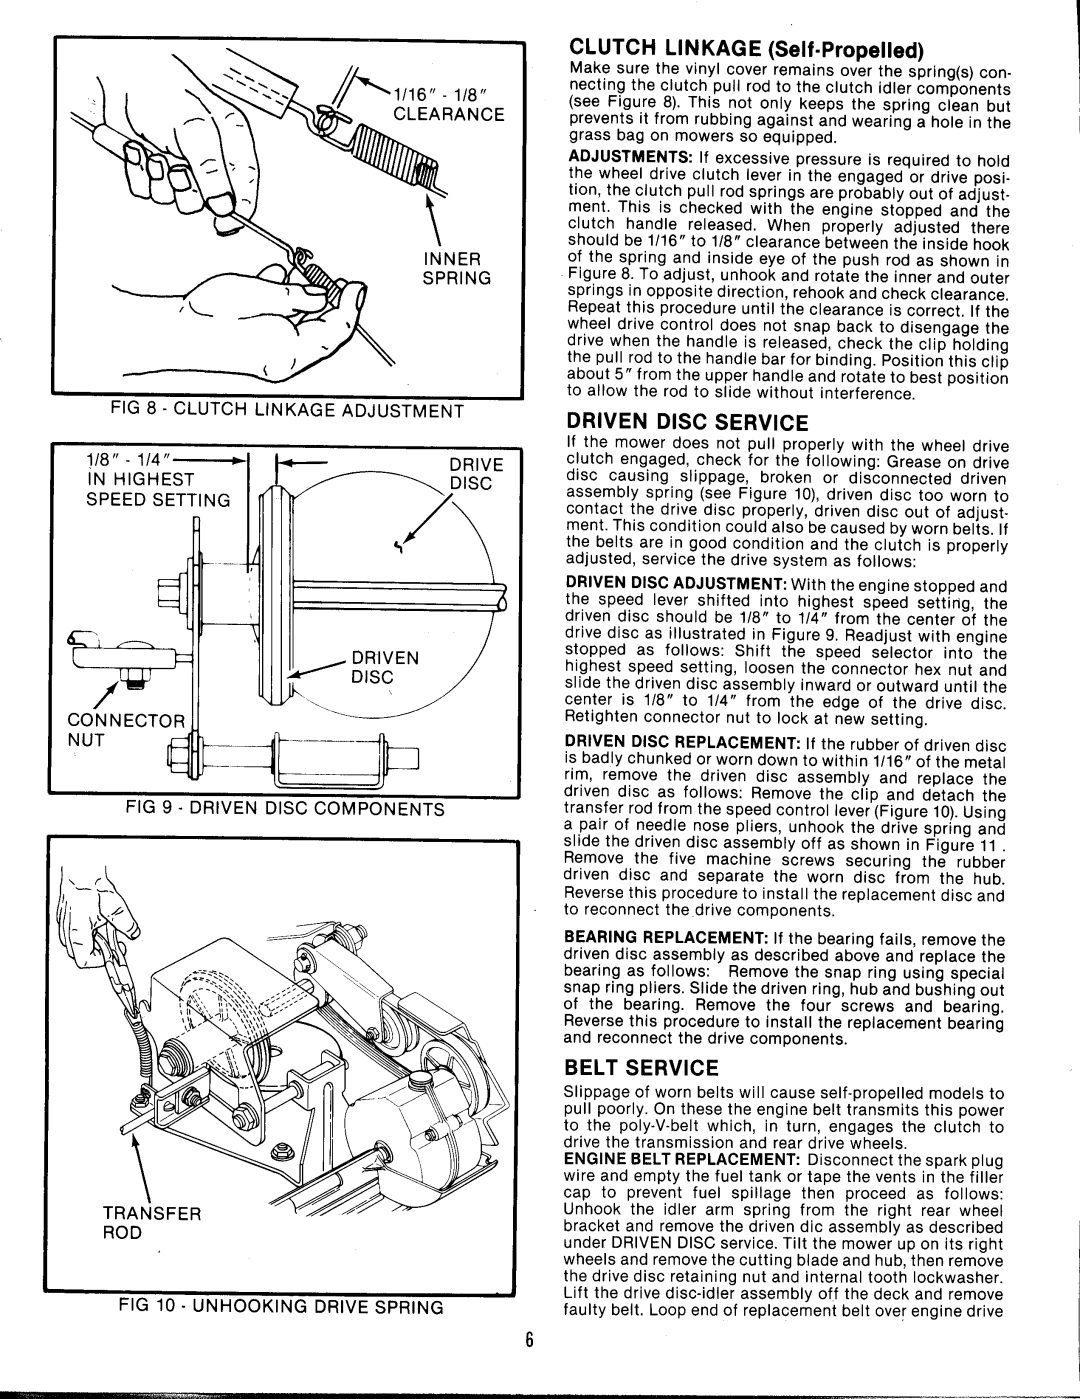 Snapper 21402P manual 